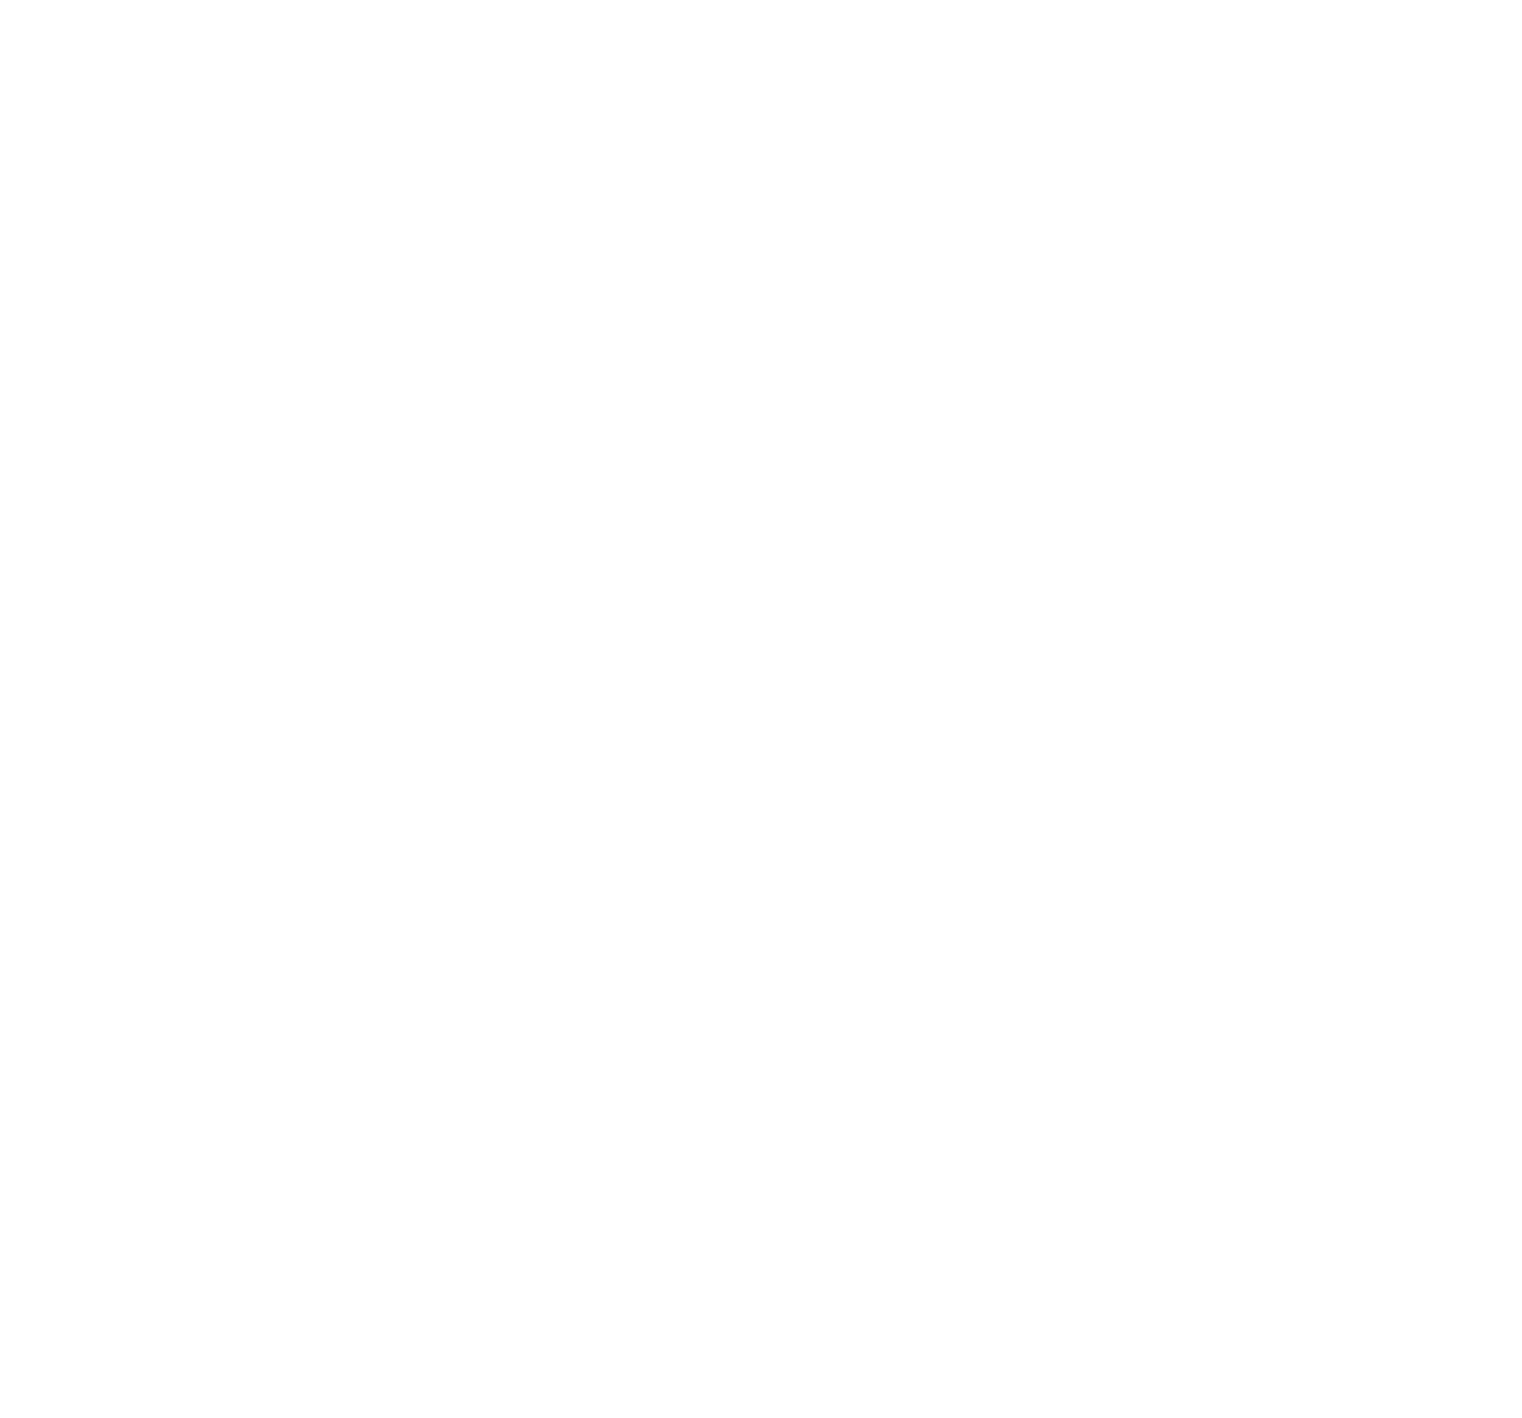 CorpHousing Group logo pour fonds sombres (PNG transparent)